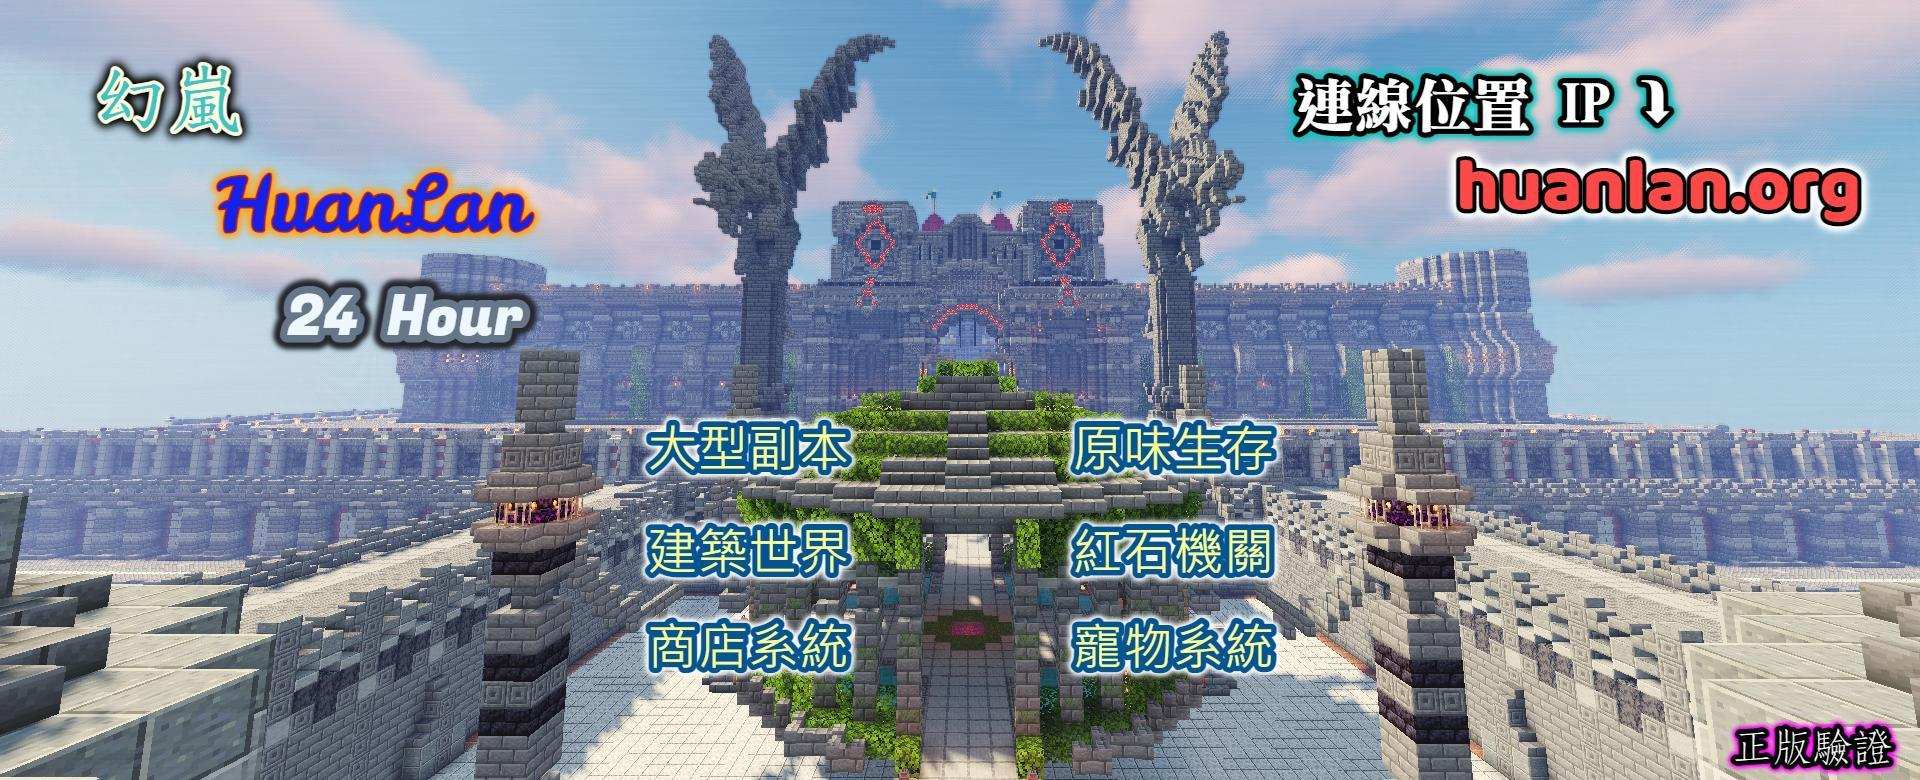 自架 1 16 5 幻嵐huanlan 生存rpg 大型副本 建築世界 抽獎系統 寵物系統 Minecraft 我的世界 當個創世神 哈啦板 巴哈姆特